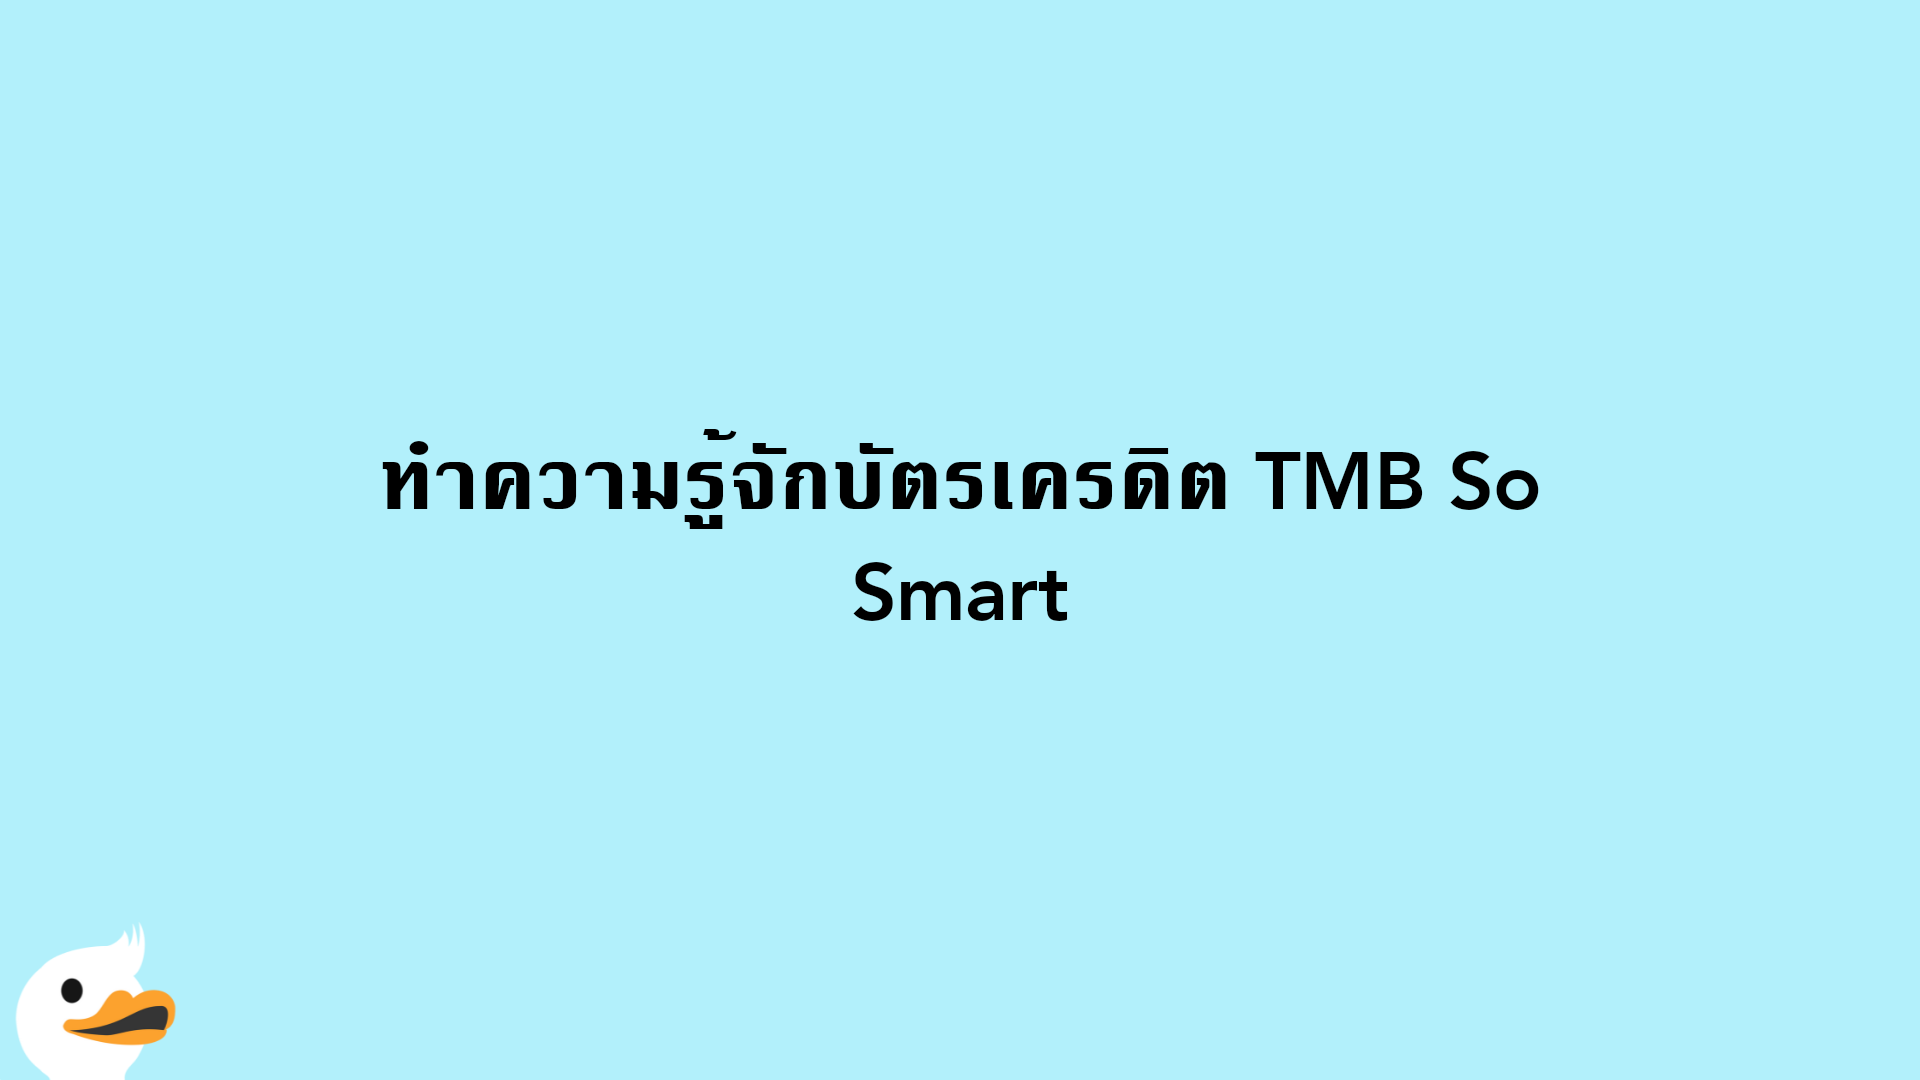 บัตรเครดิต Tmb So Smart ดีไหม เป็นอย่างไร | Moneyduck Thailand